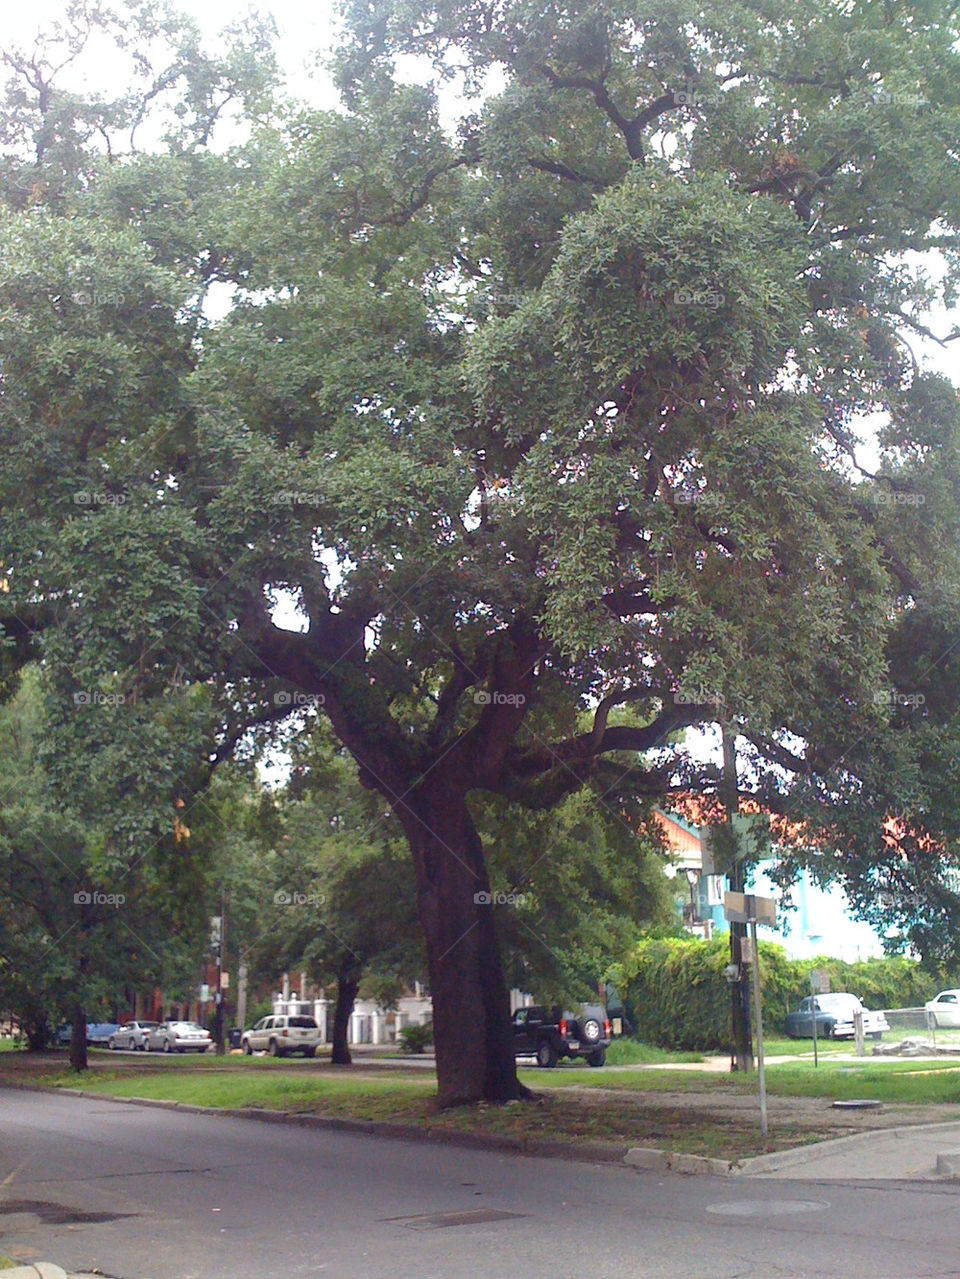 green tree new oak by rr27